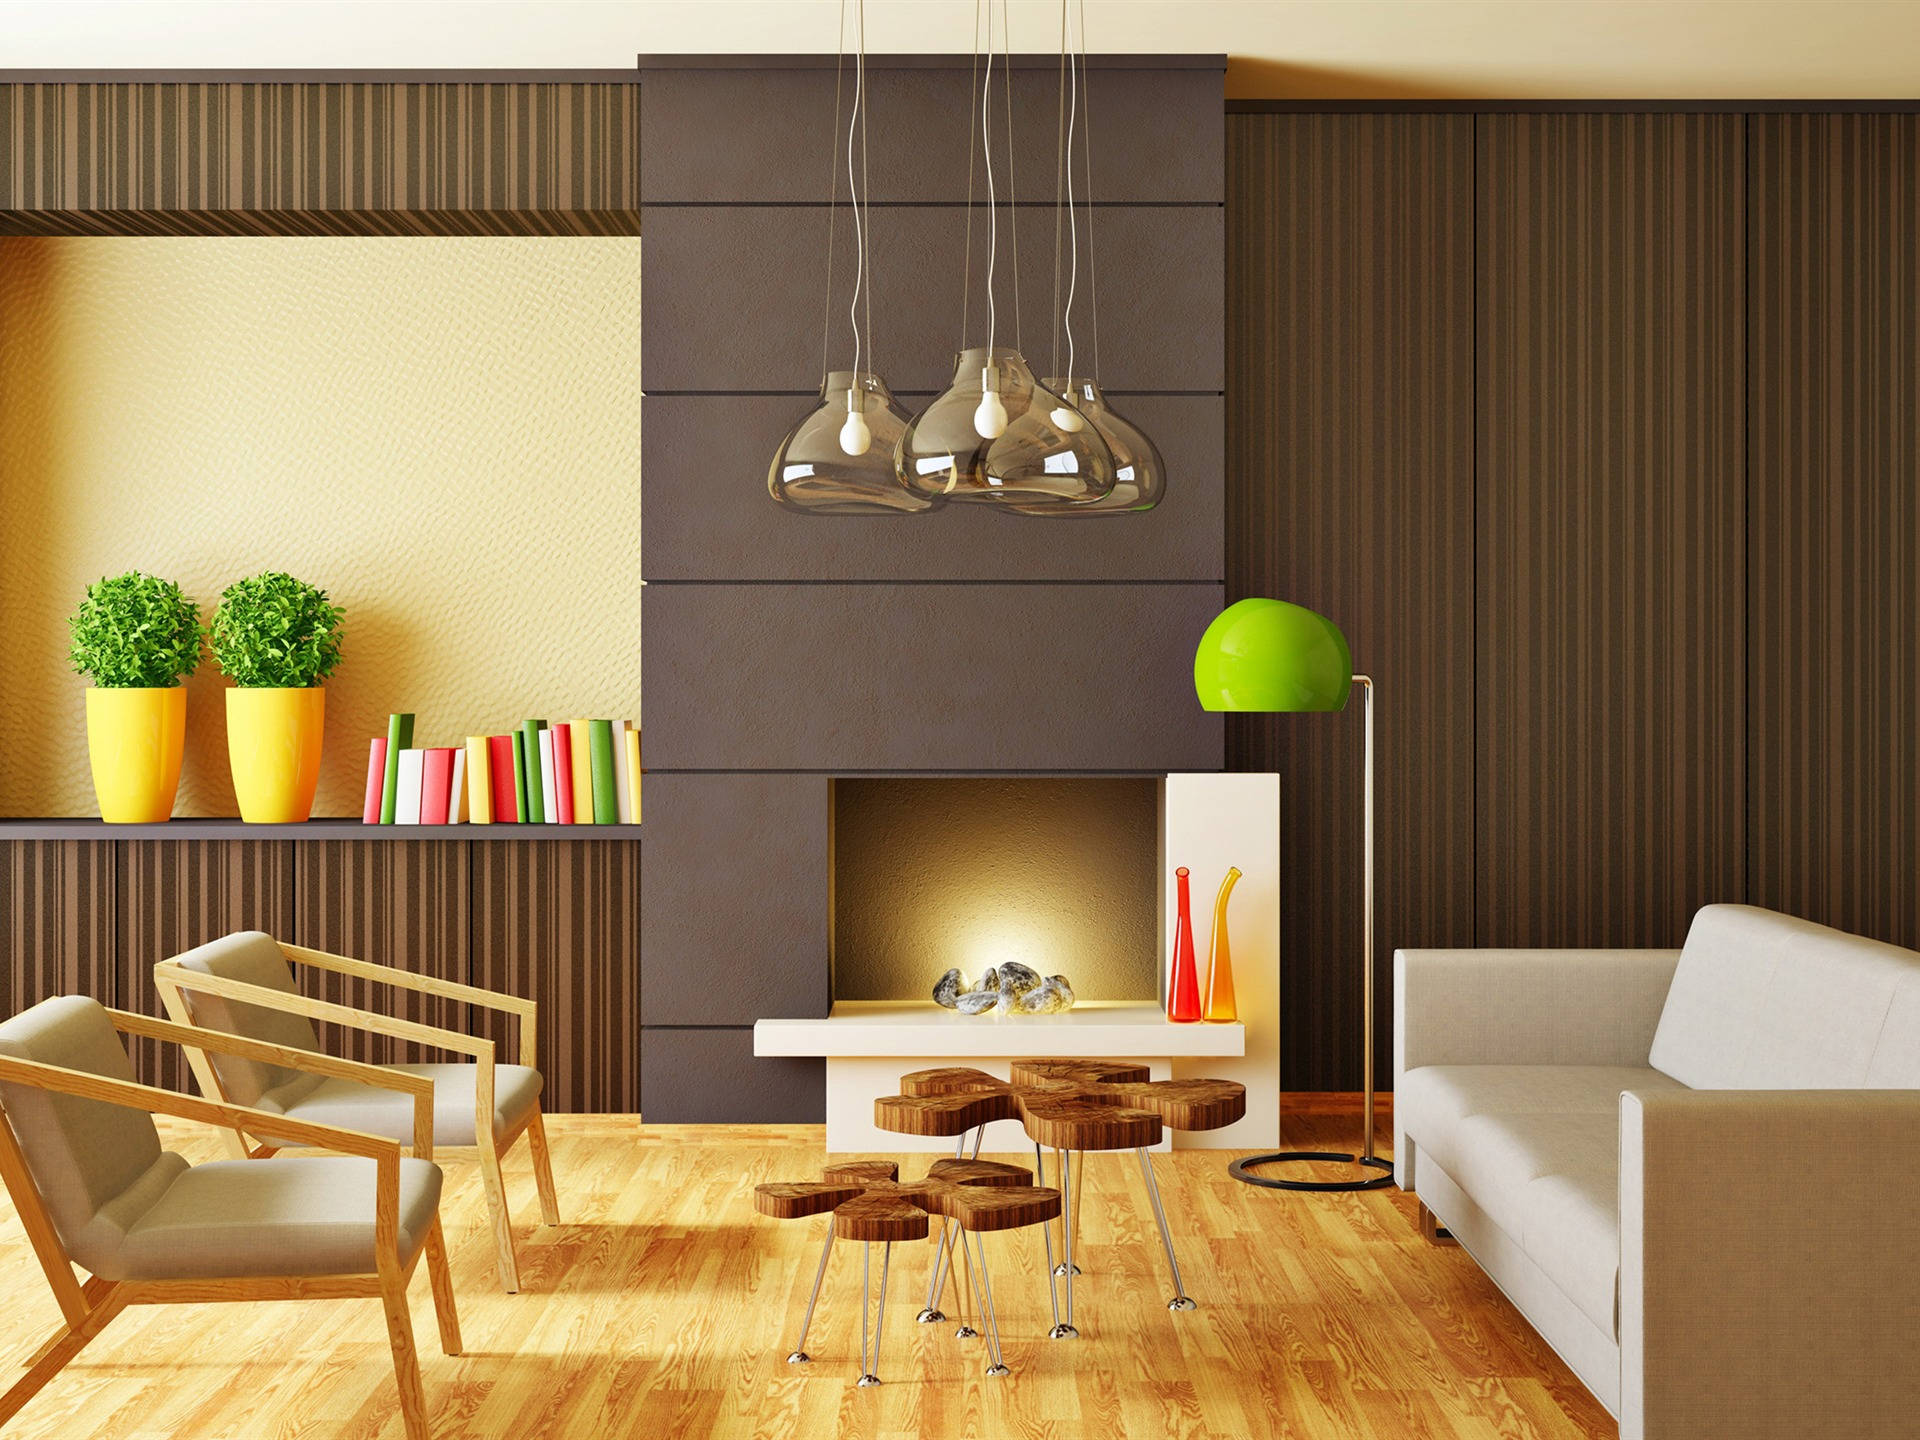 Elegantly Designed Living Room With Wooden Furniture